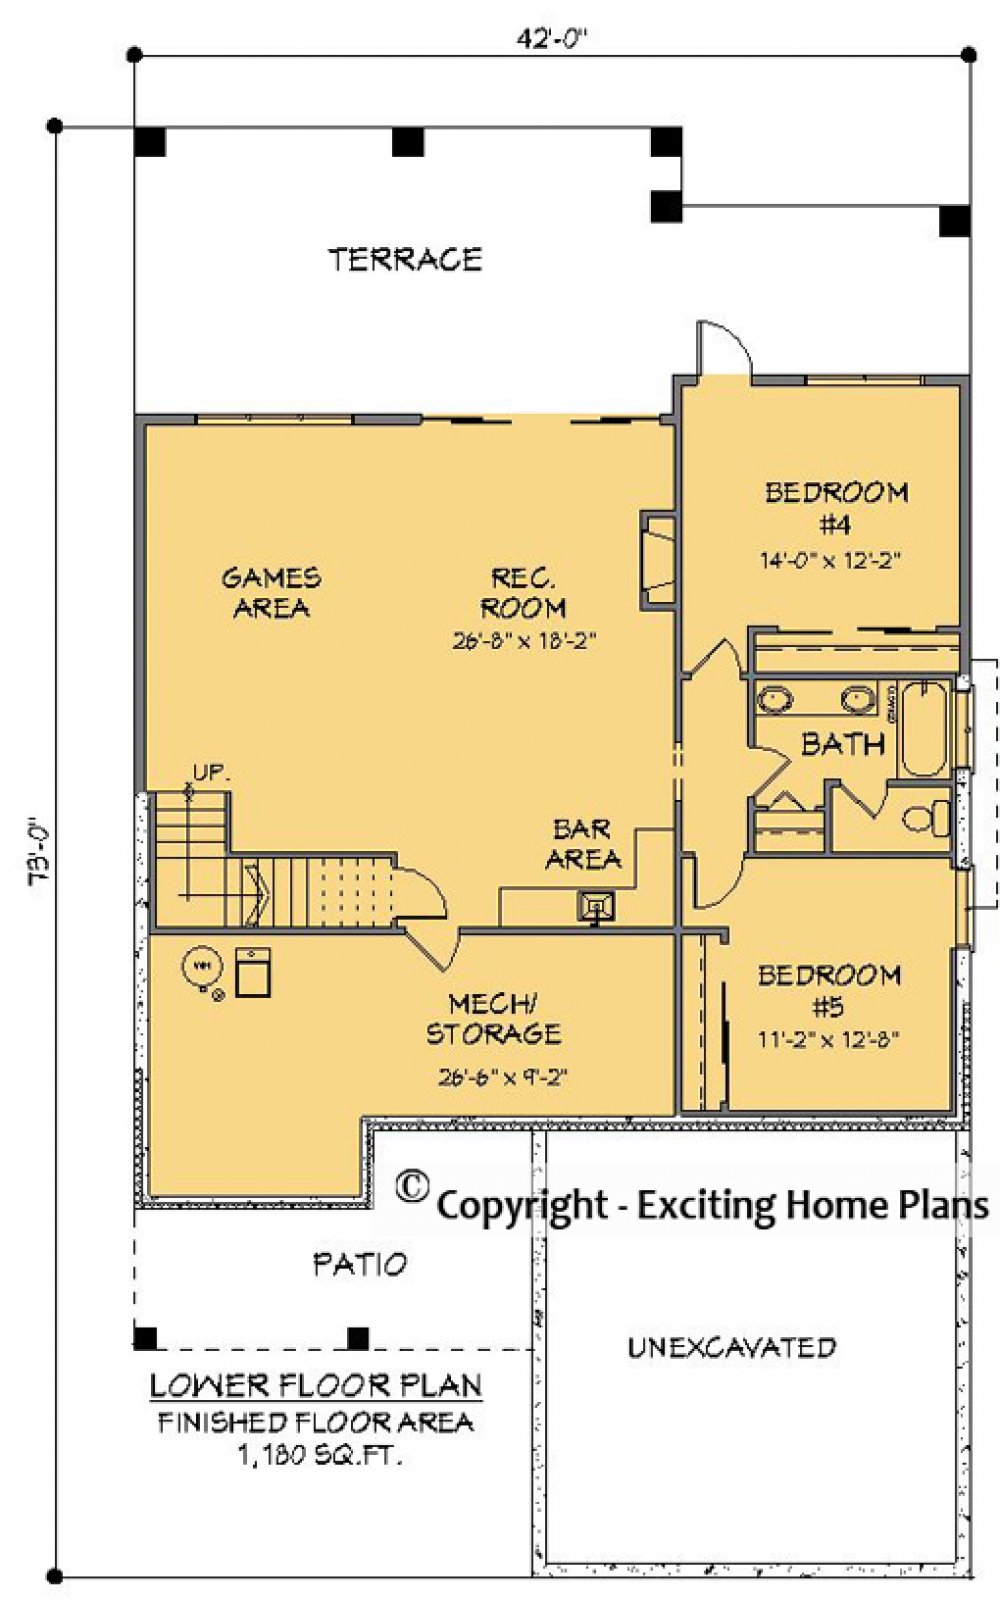 House Plan E1711-10  Lower Floor Plan